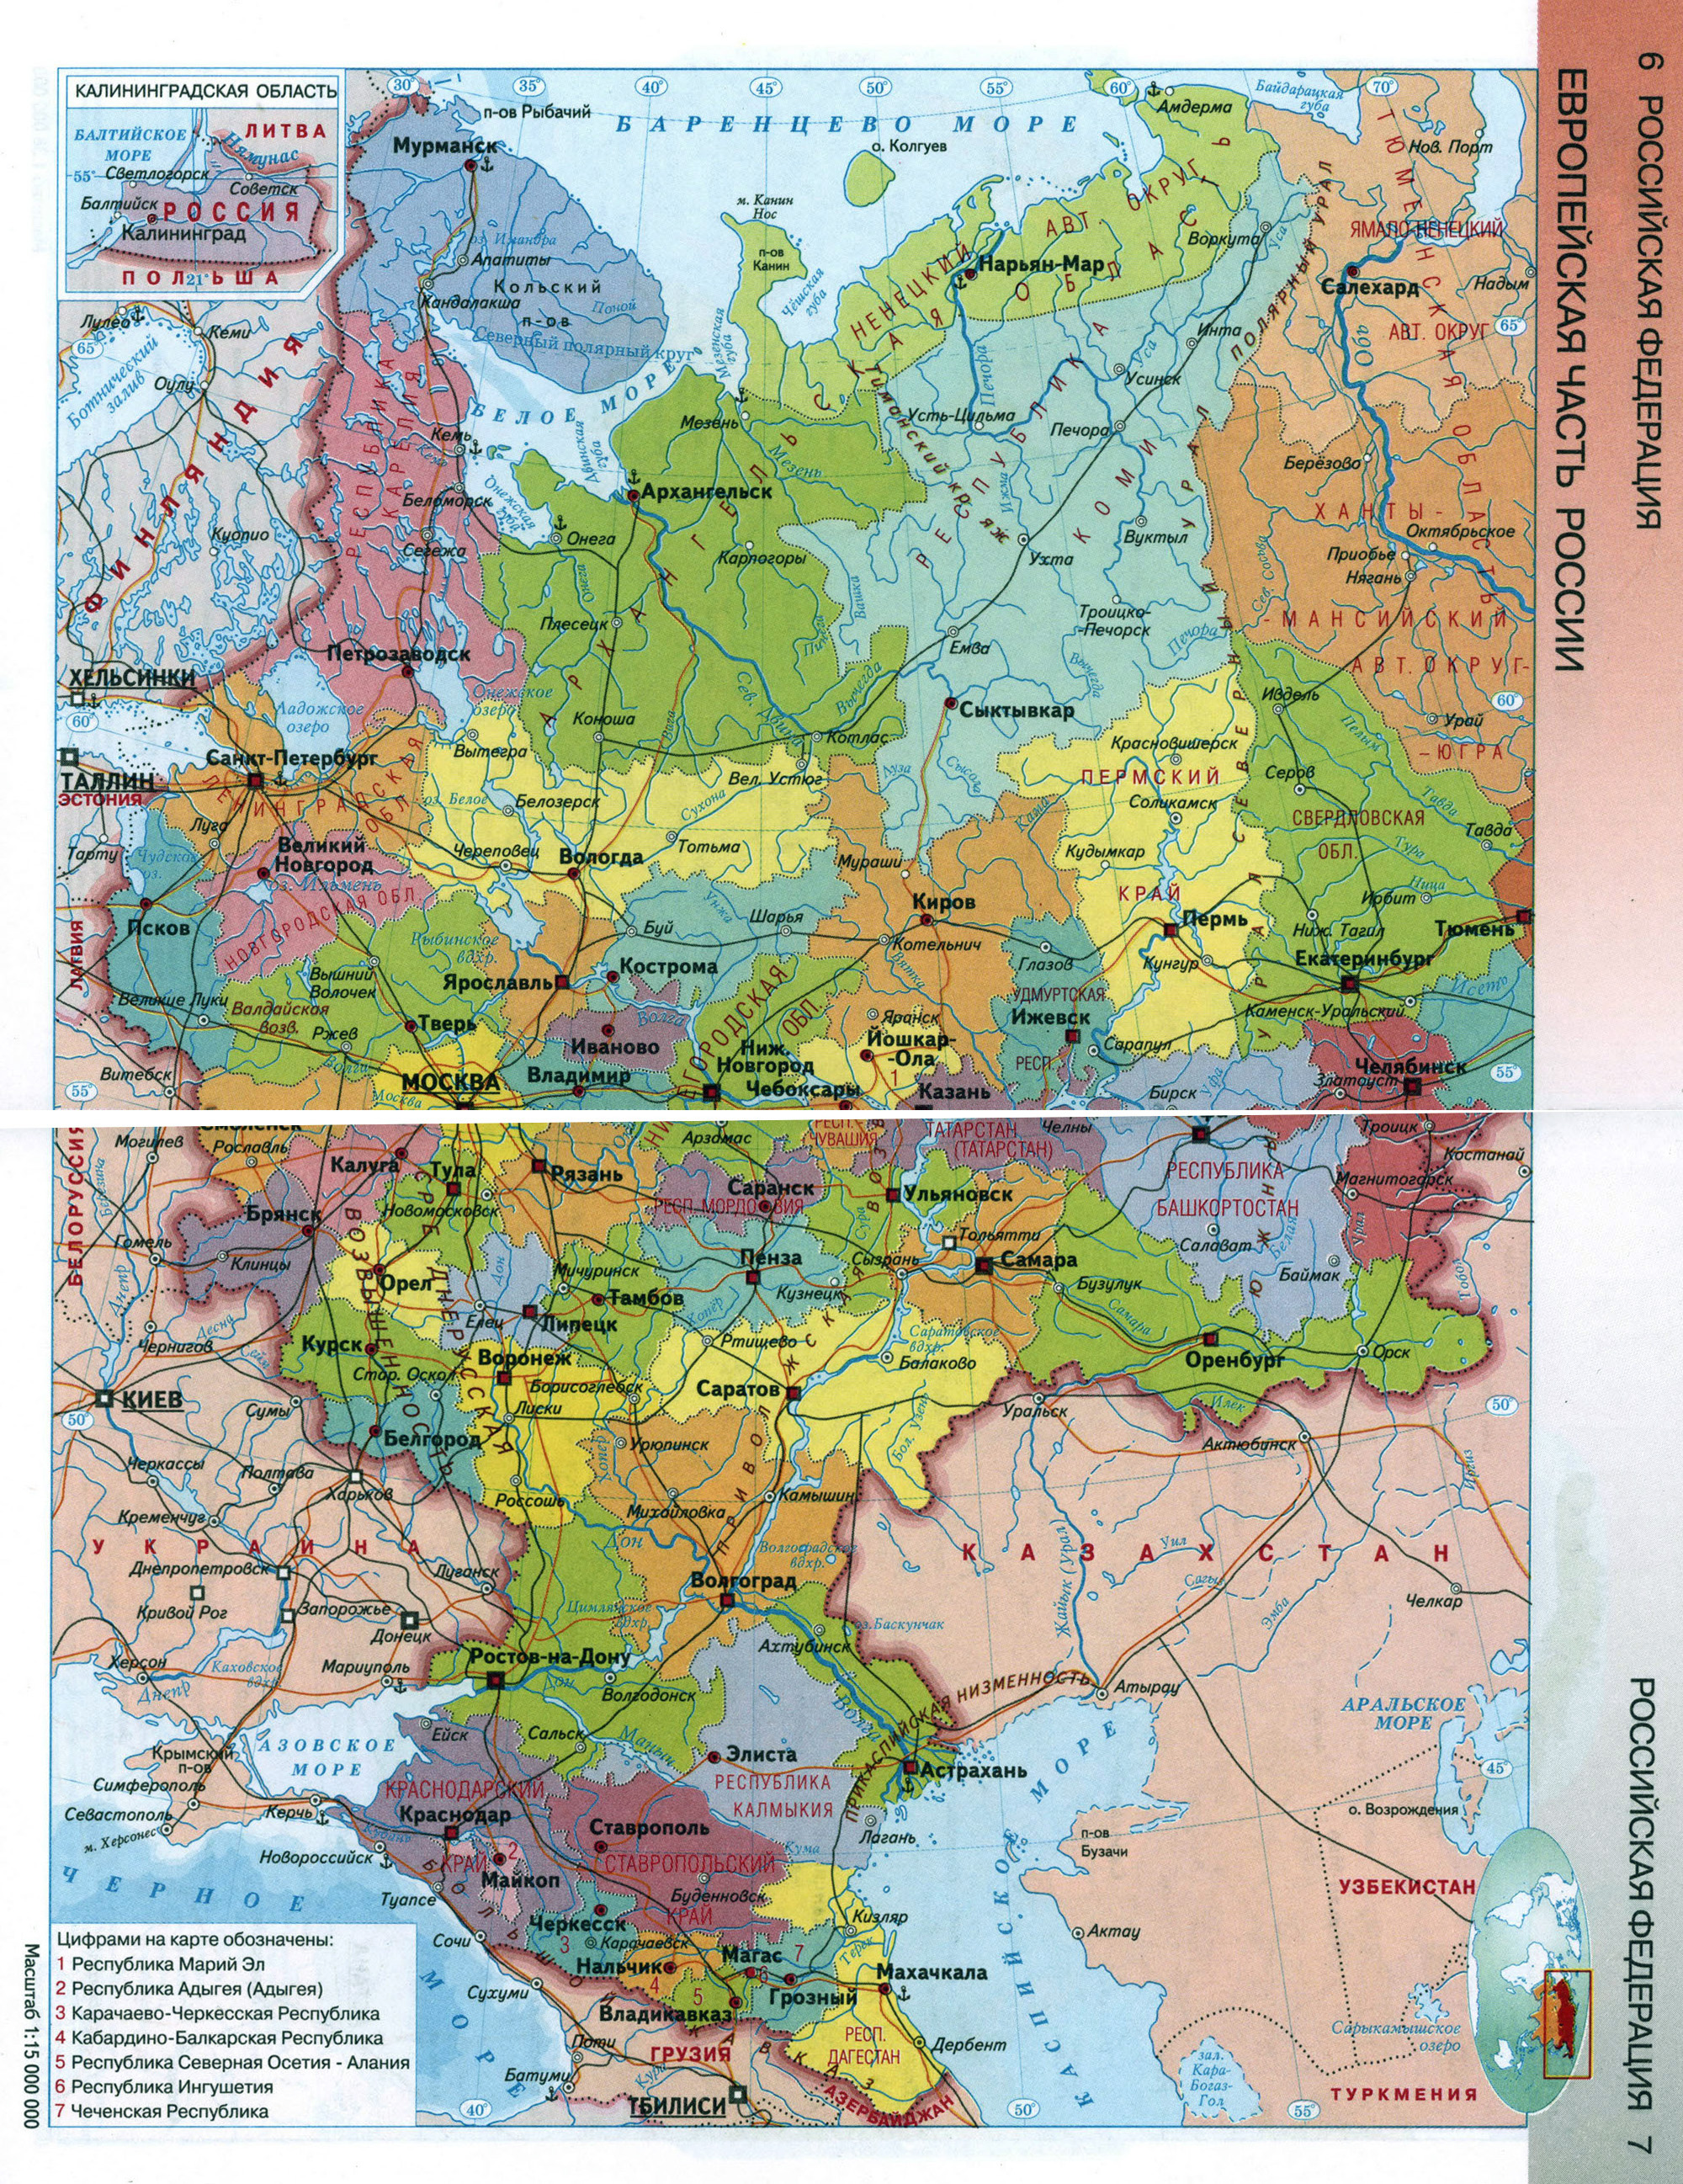 Большая детальная карта Европейской части Российской Федерации на русскомязыке